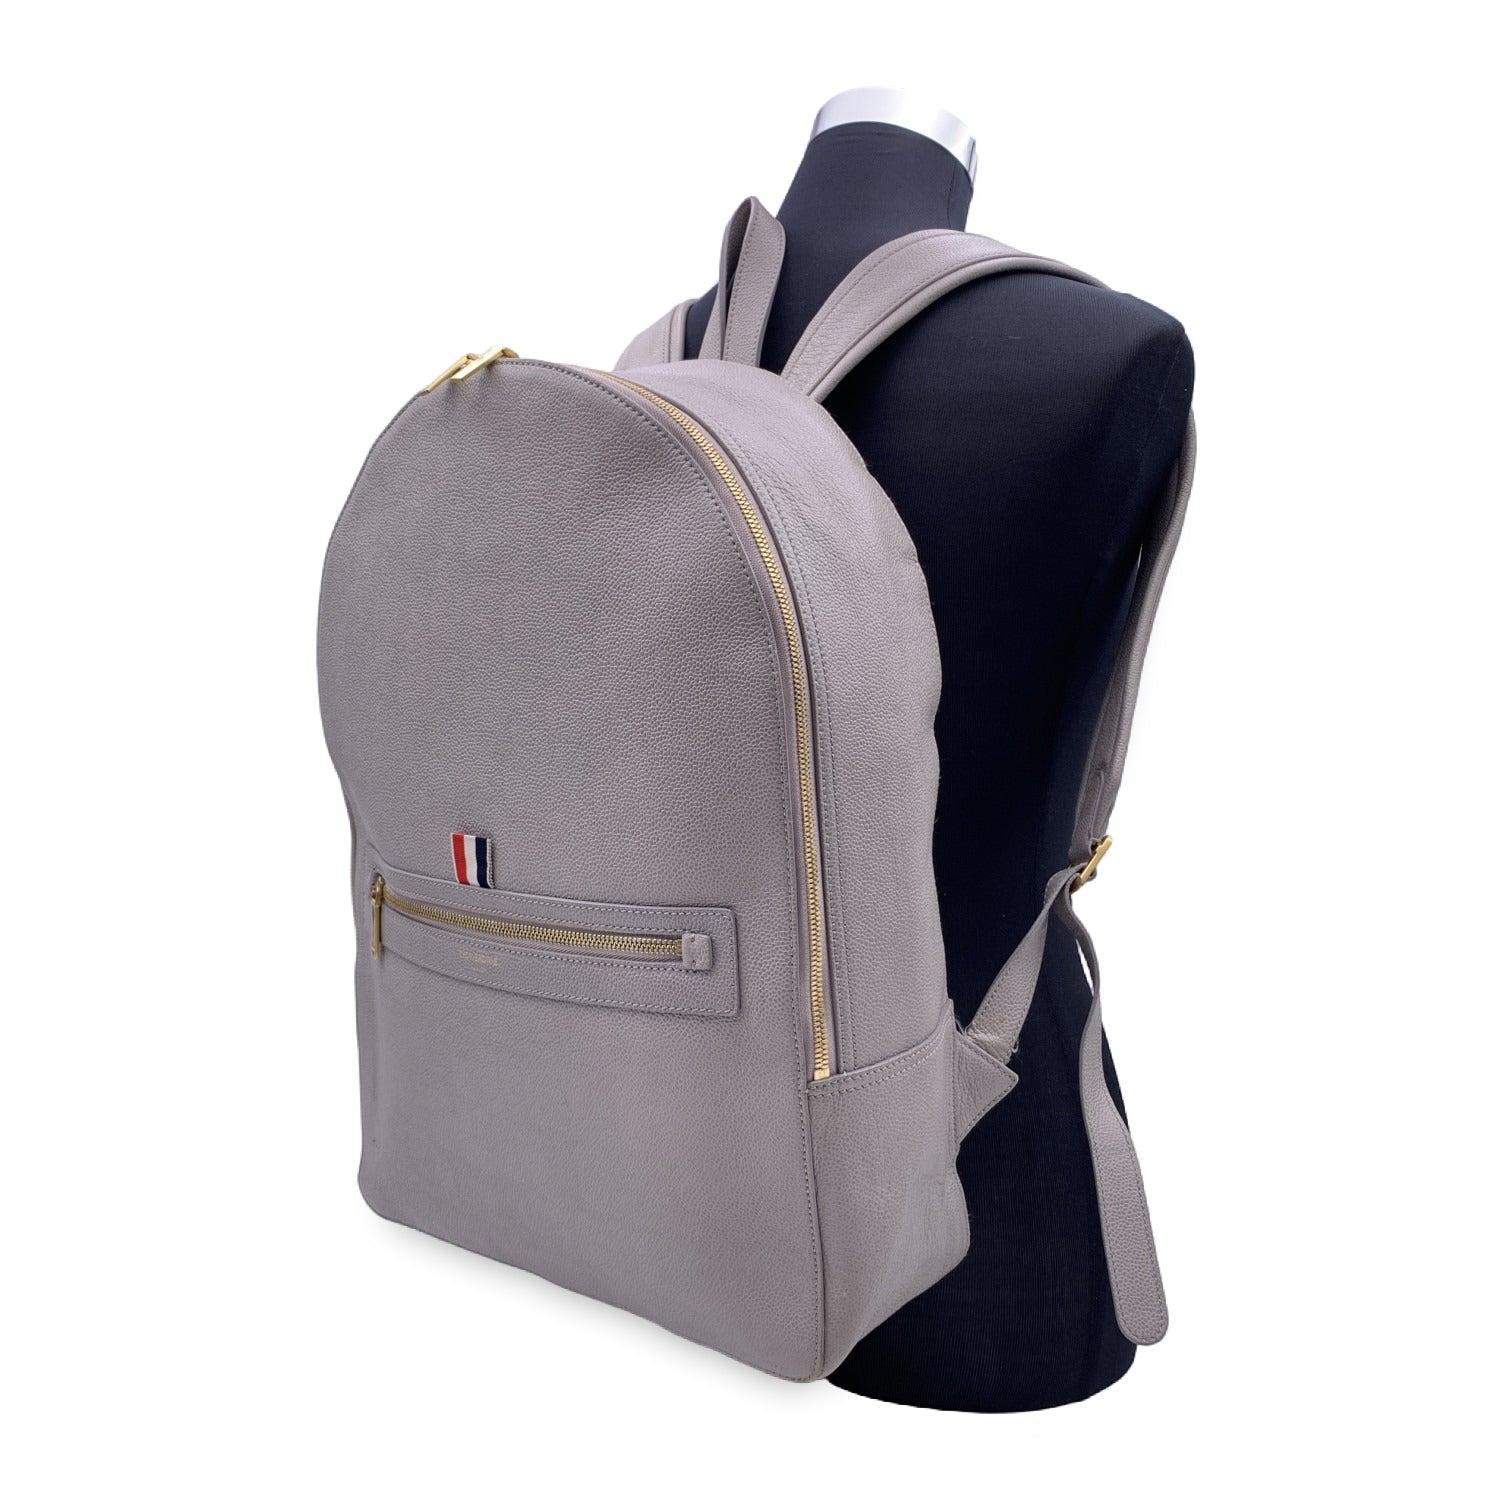 Thom Browne Classic Backpack Bag aus grauem Kieselkornleder. Sie ist mit einer dreifarbigen Grosgrain-Schlaufe und der Unterschrift des Designers in goldenem Metall auf der Vorderseite versehen. Einfacher Griff oben, doppelte verstellbare